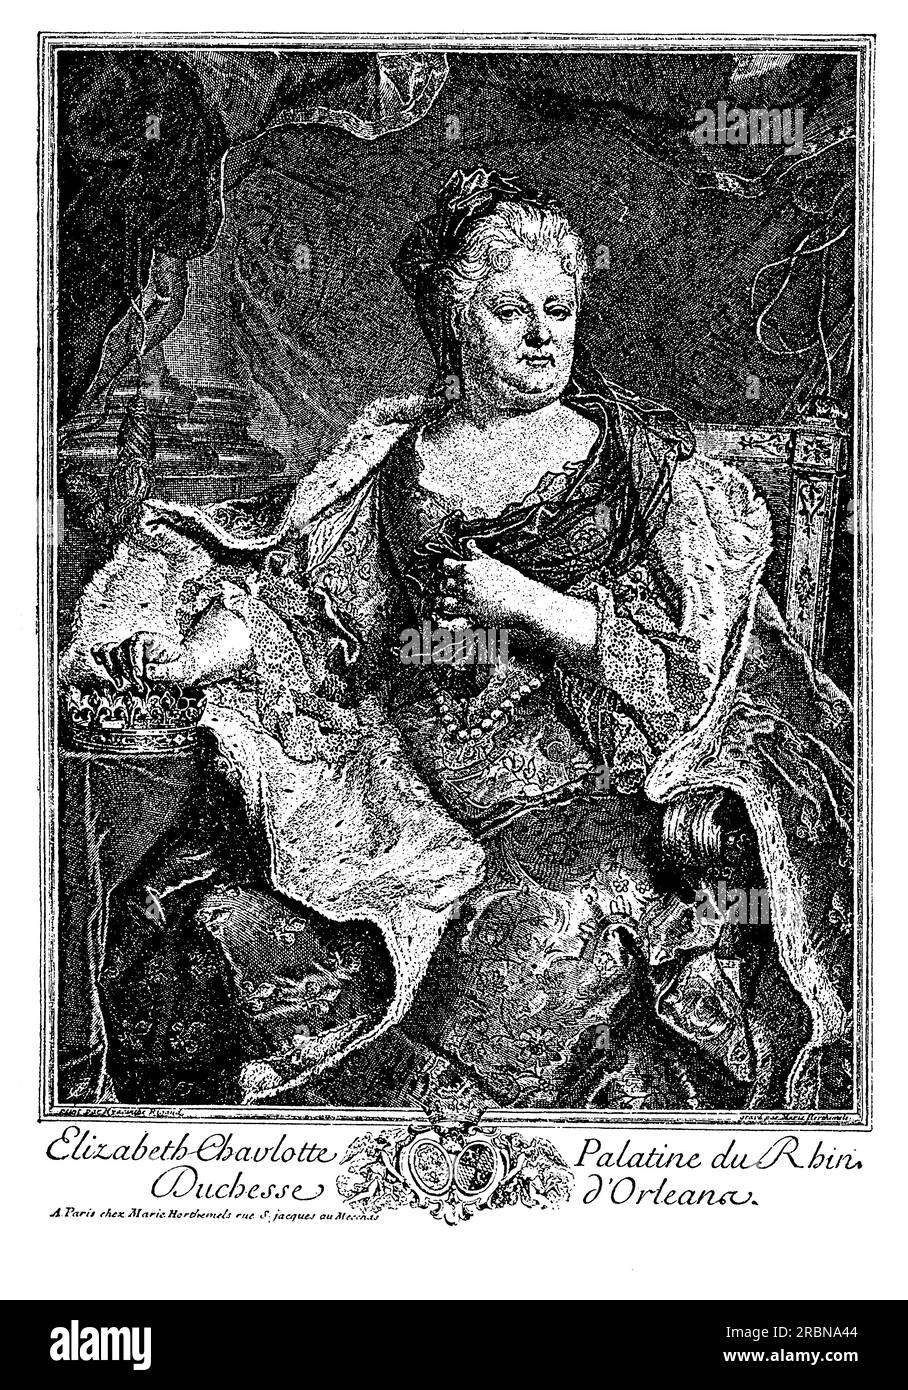 Elisabeth Charlotte, Herzogin von Orléans, war eine deutsche Prinzessin, die die Ehefrau von Philippe I., Herzog von Orléans, dem jüngeren Bruder von König Ludwig XIV. Von Frankreich, wurde. Sie war bekannt für ihren scharfen Witz und ihre ausgesprochene Persönlichkeit sowie für ihre Liebe zum Garten und zur Kunst. Die Herzogin war auch ein begeisterter Briefschreiber, und ihre Korrespondenz bietet wertvolle Einblicke in das Leben am französischen Hof im späten 17. Und frühen 18. Jahrhundert. Trotz ihrer vielen Leistungen stand Elisabeth Charlotte oft im Widerspruch zu ihrem Mann und anderen Mitgliedern des französischen Hofes, und manchmal auch zu ihrer Ausstrahlung Stockfoto